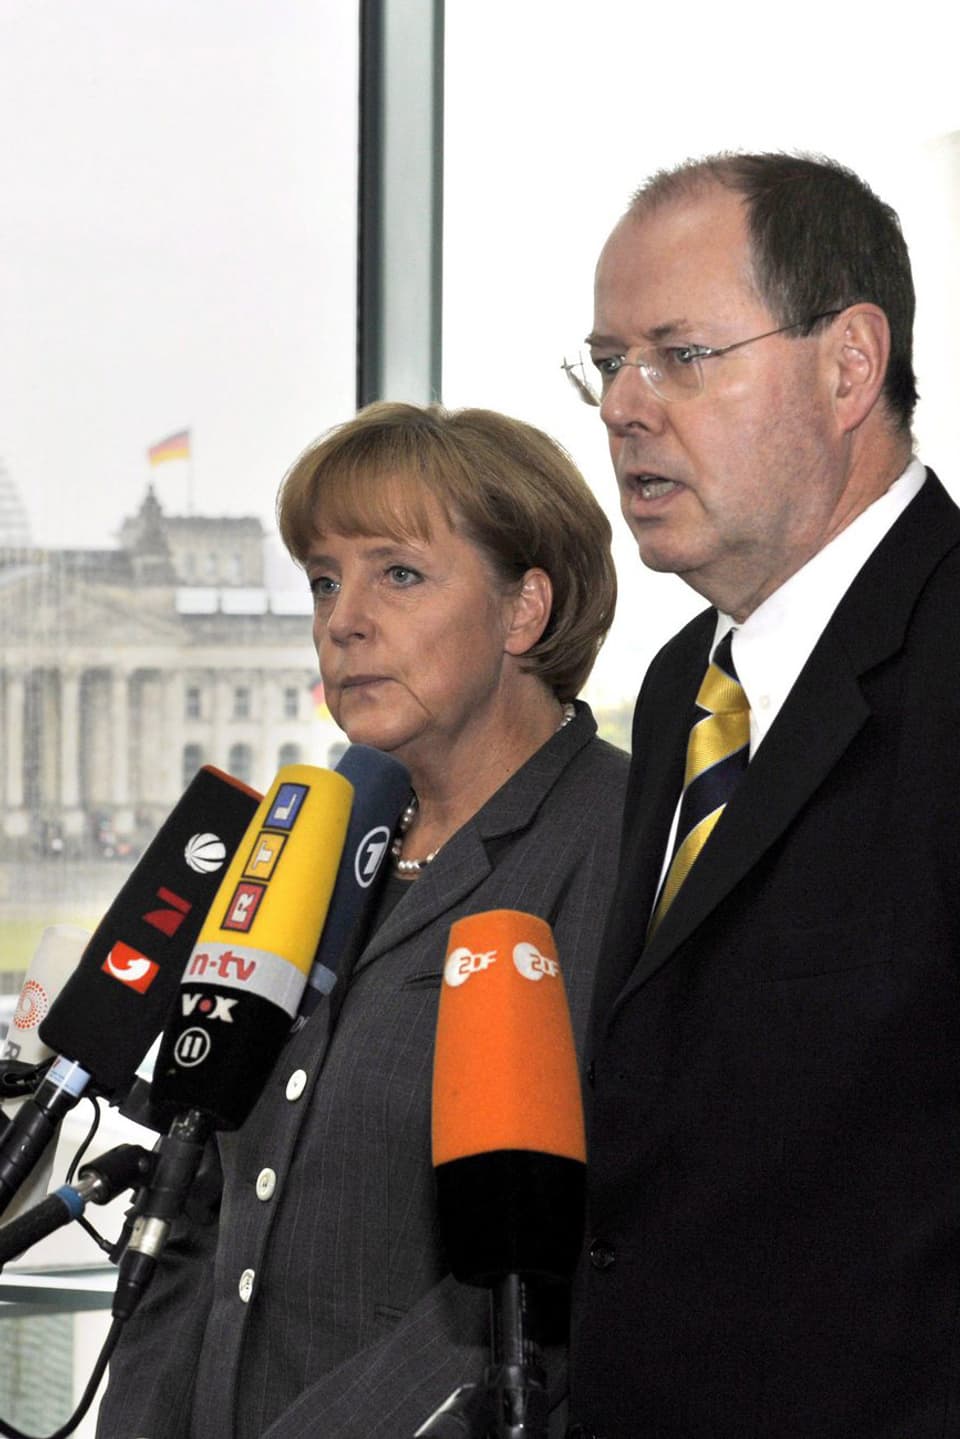 Angela Merkel und Peer Steinbrück am 5.10.2008